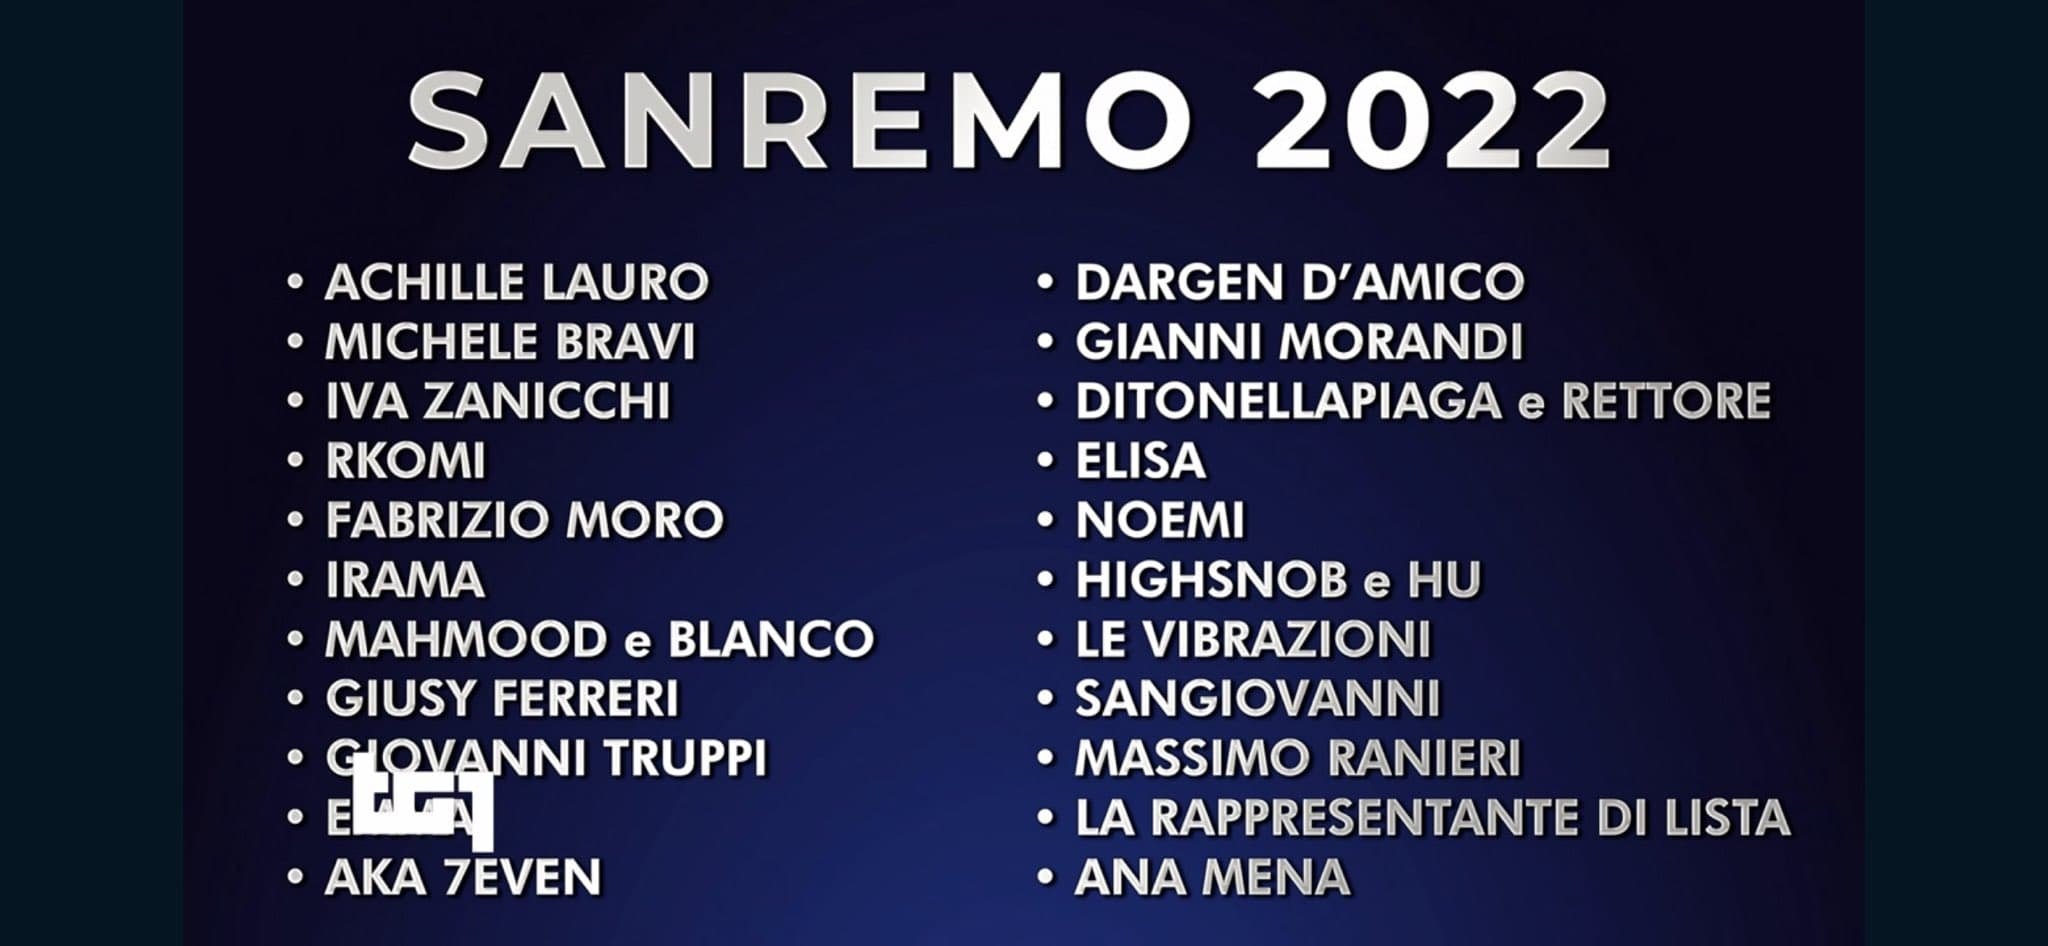 Ecco la scaletta della prima serata del Festival di Sanremo 2022